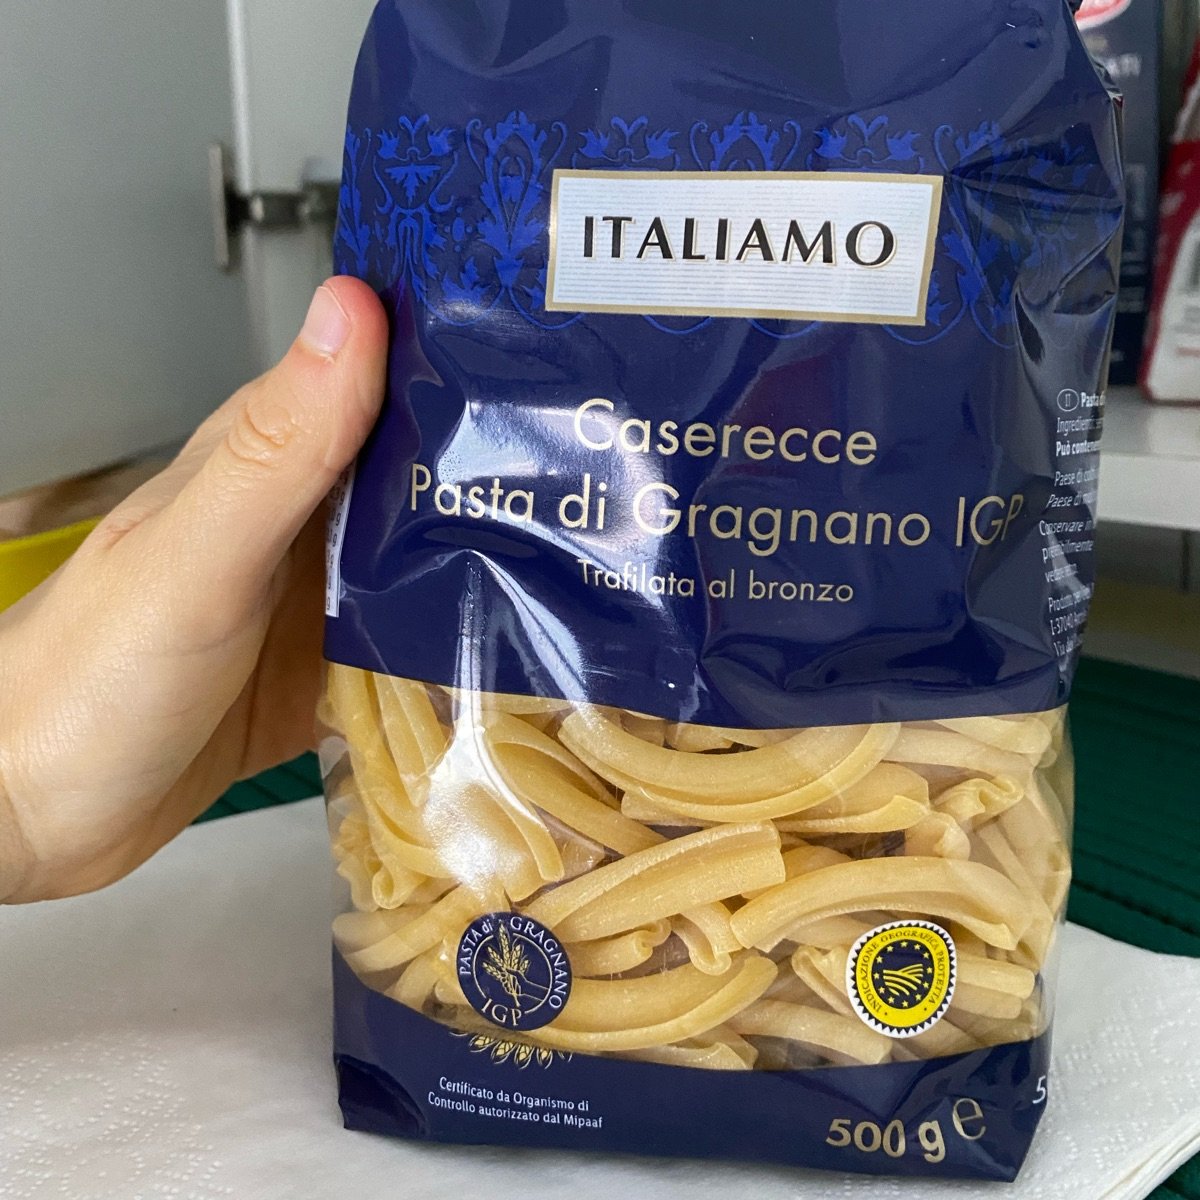 Pasta Italiamo abillion | Review